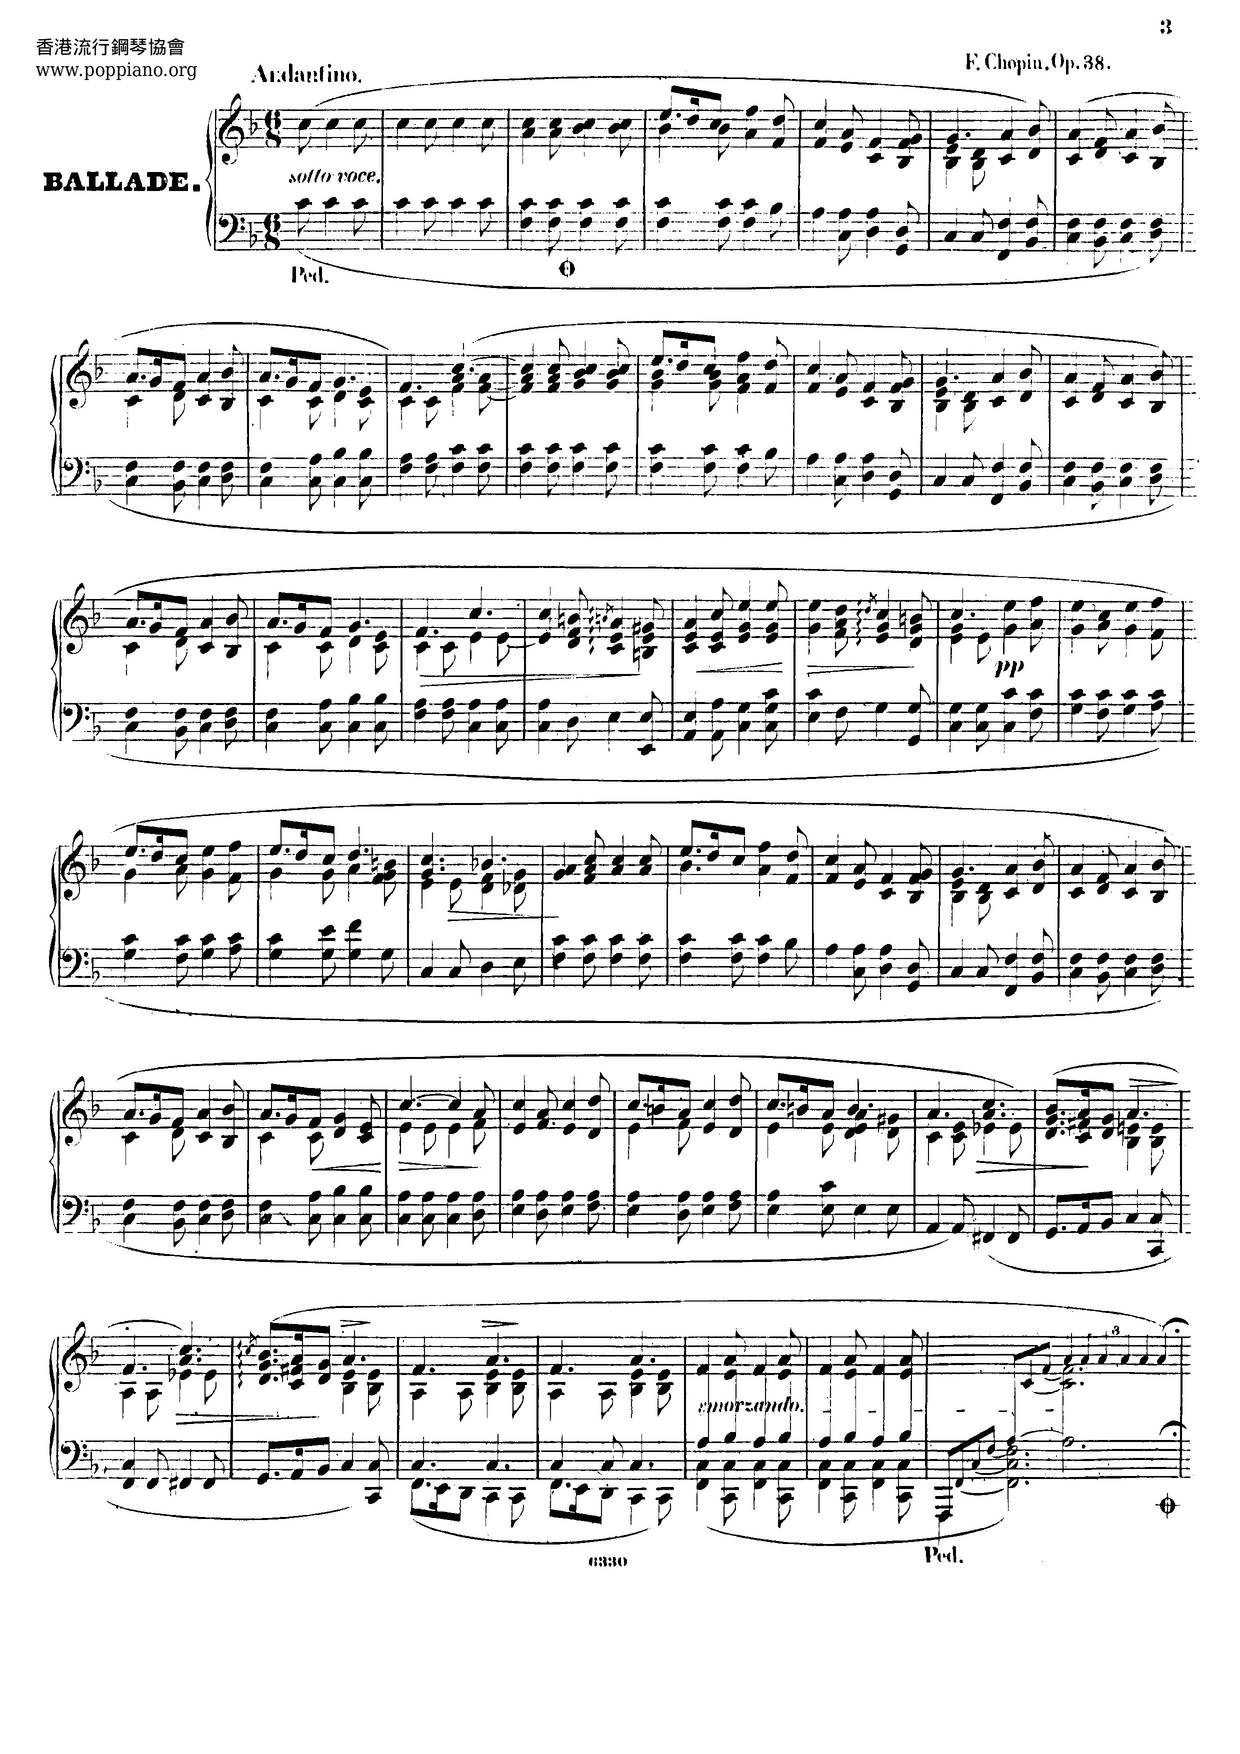 Ballade No. 2, Op. 38 Score